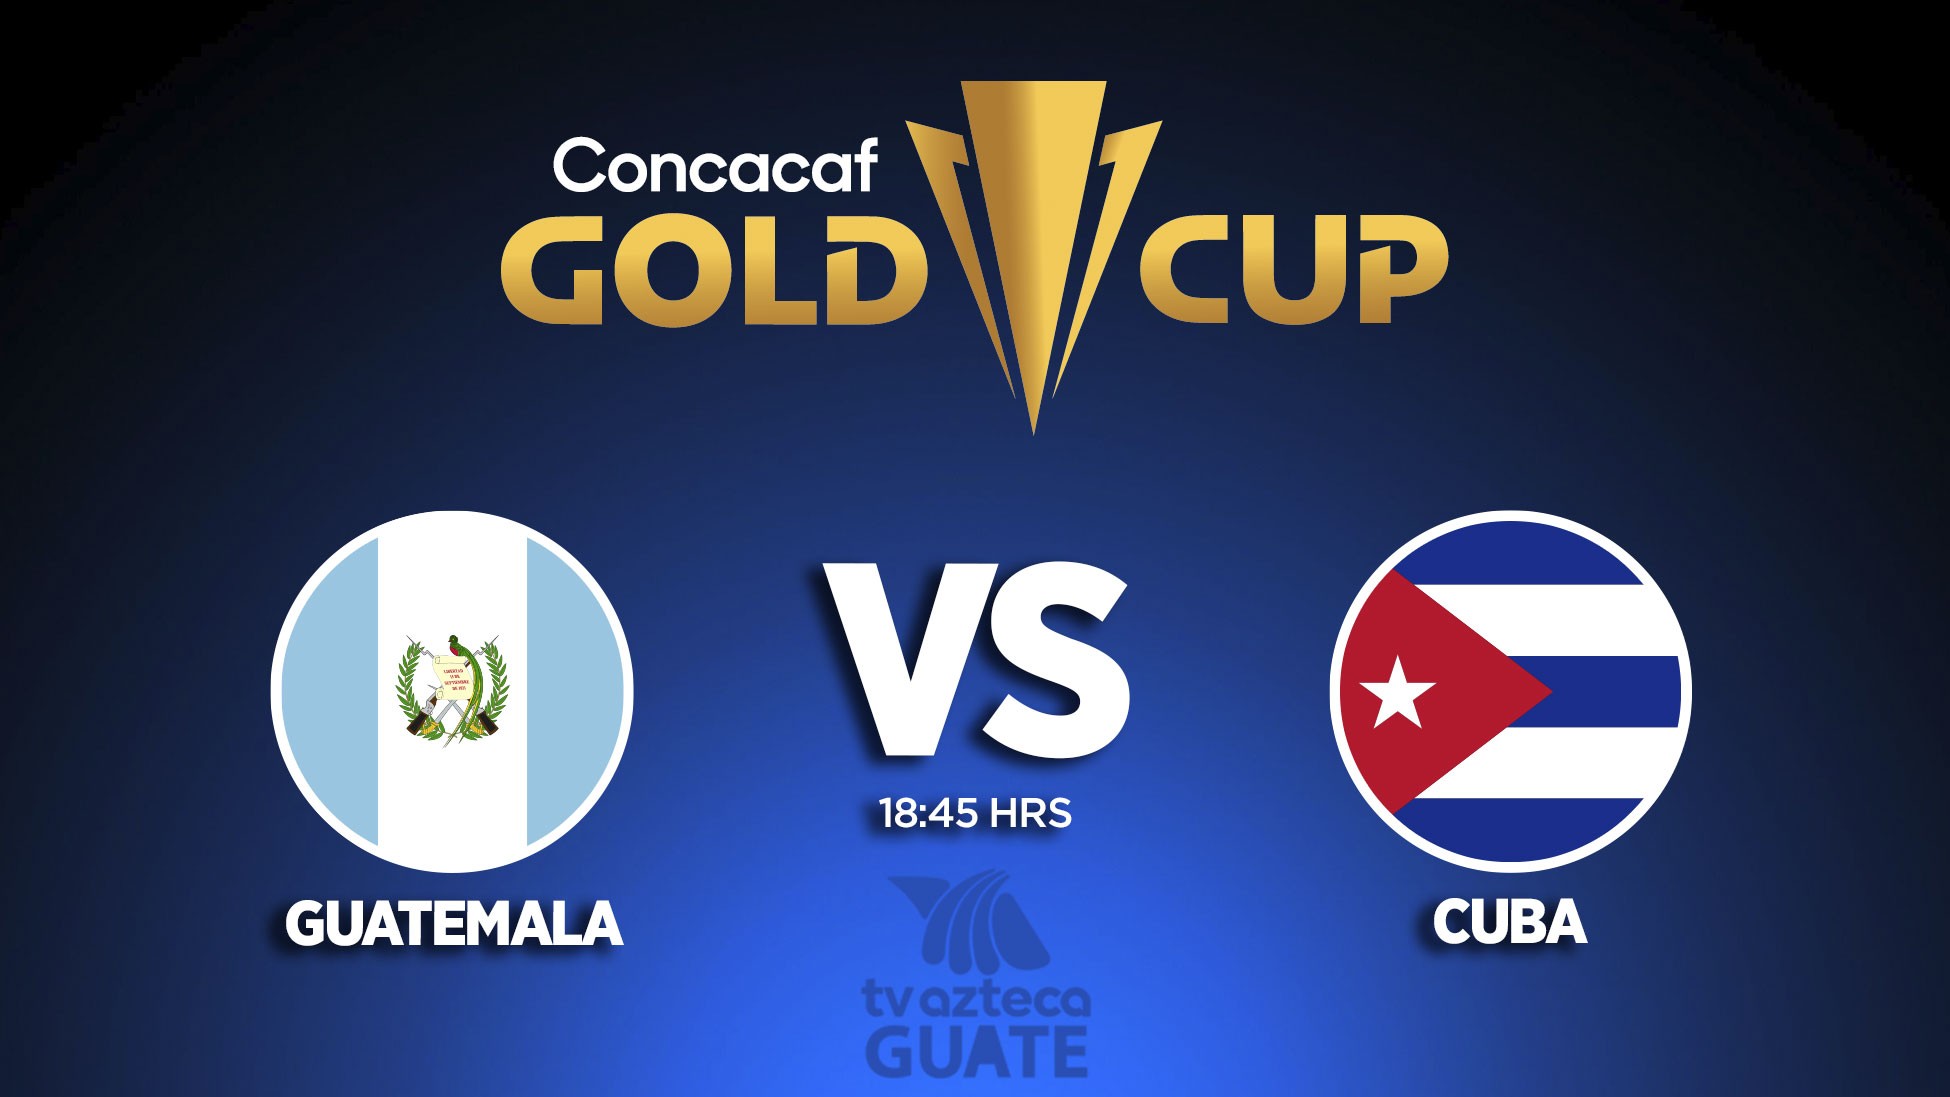 Copa Oro Guatemala Vs Cuba, la sele vuelve a ilusionar